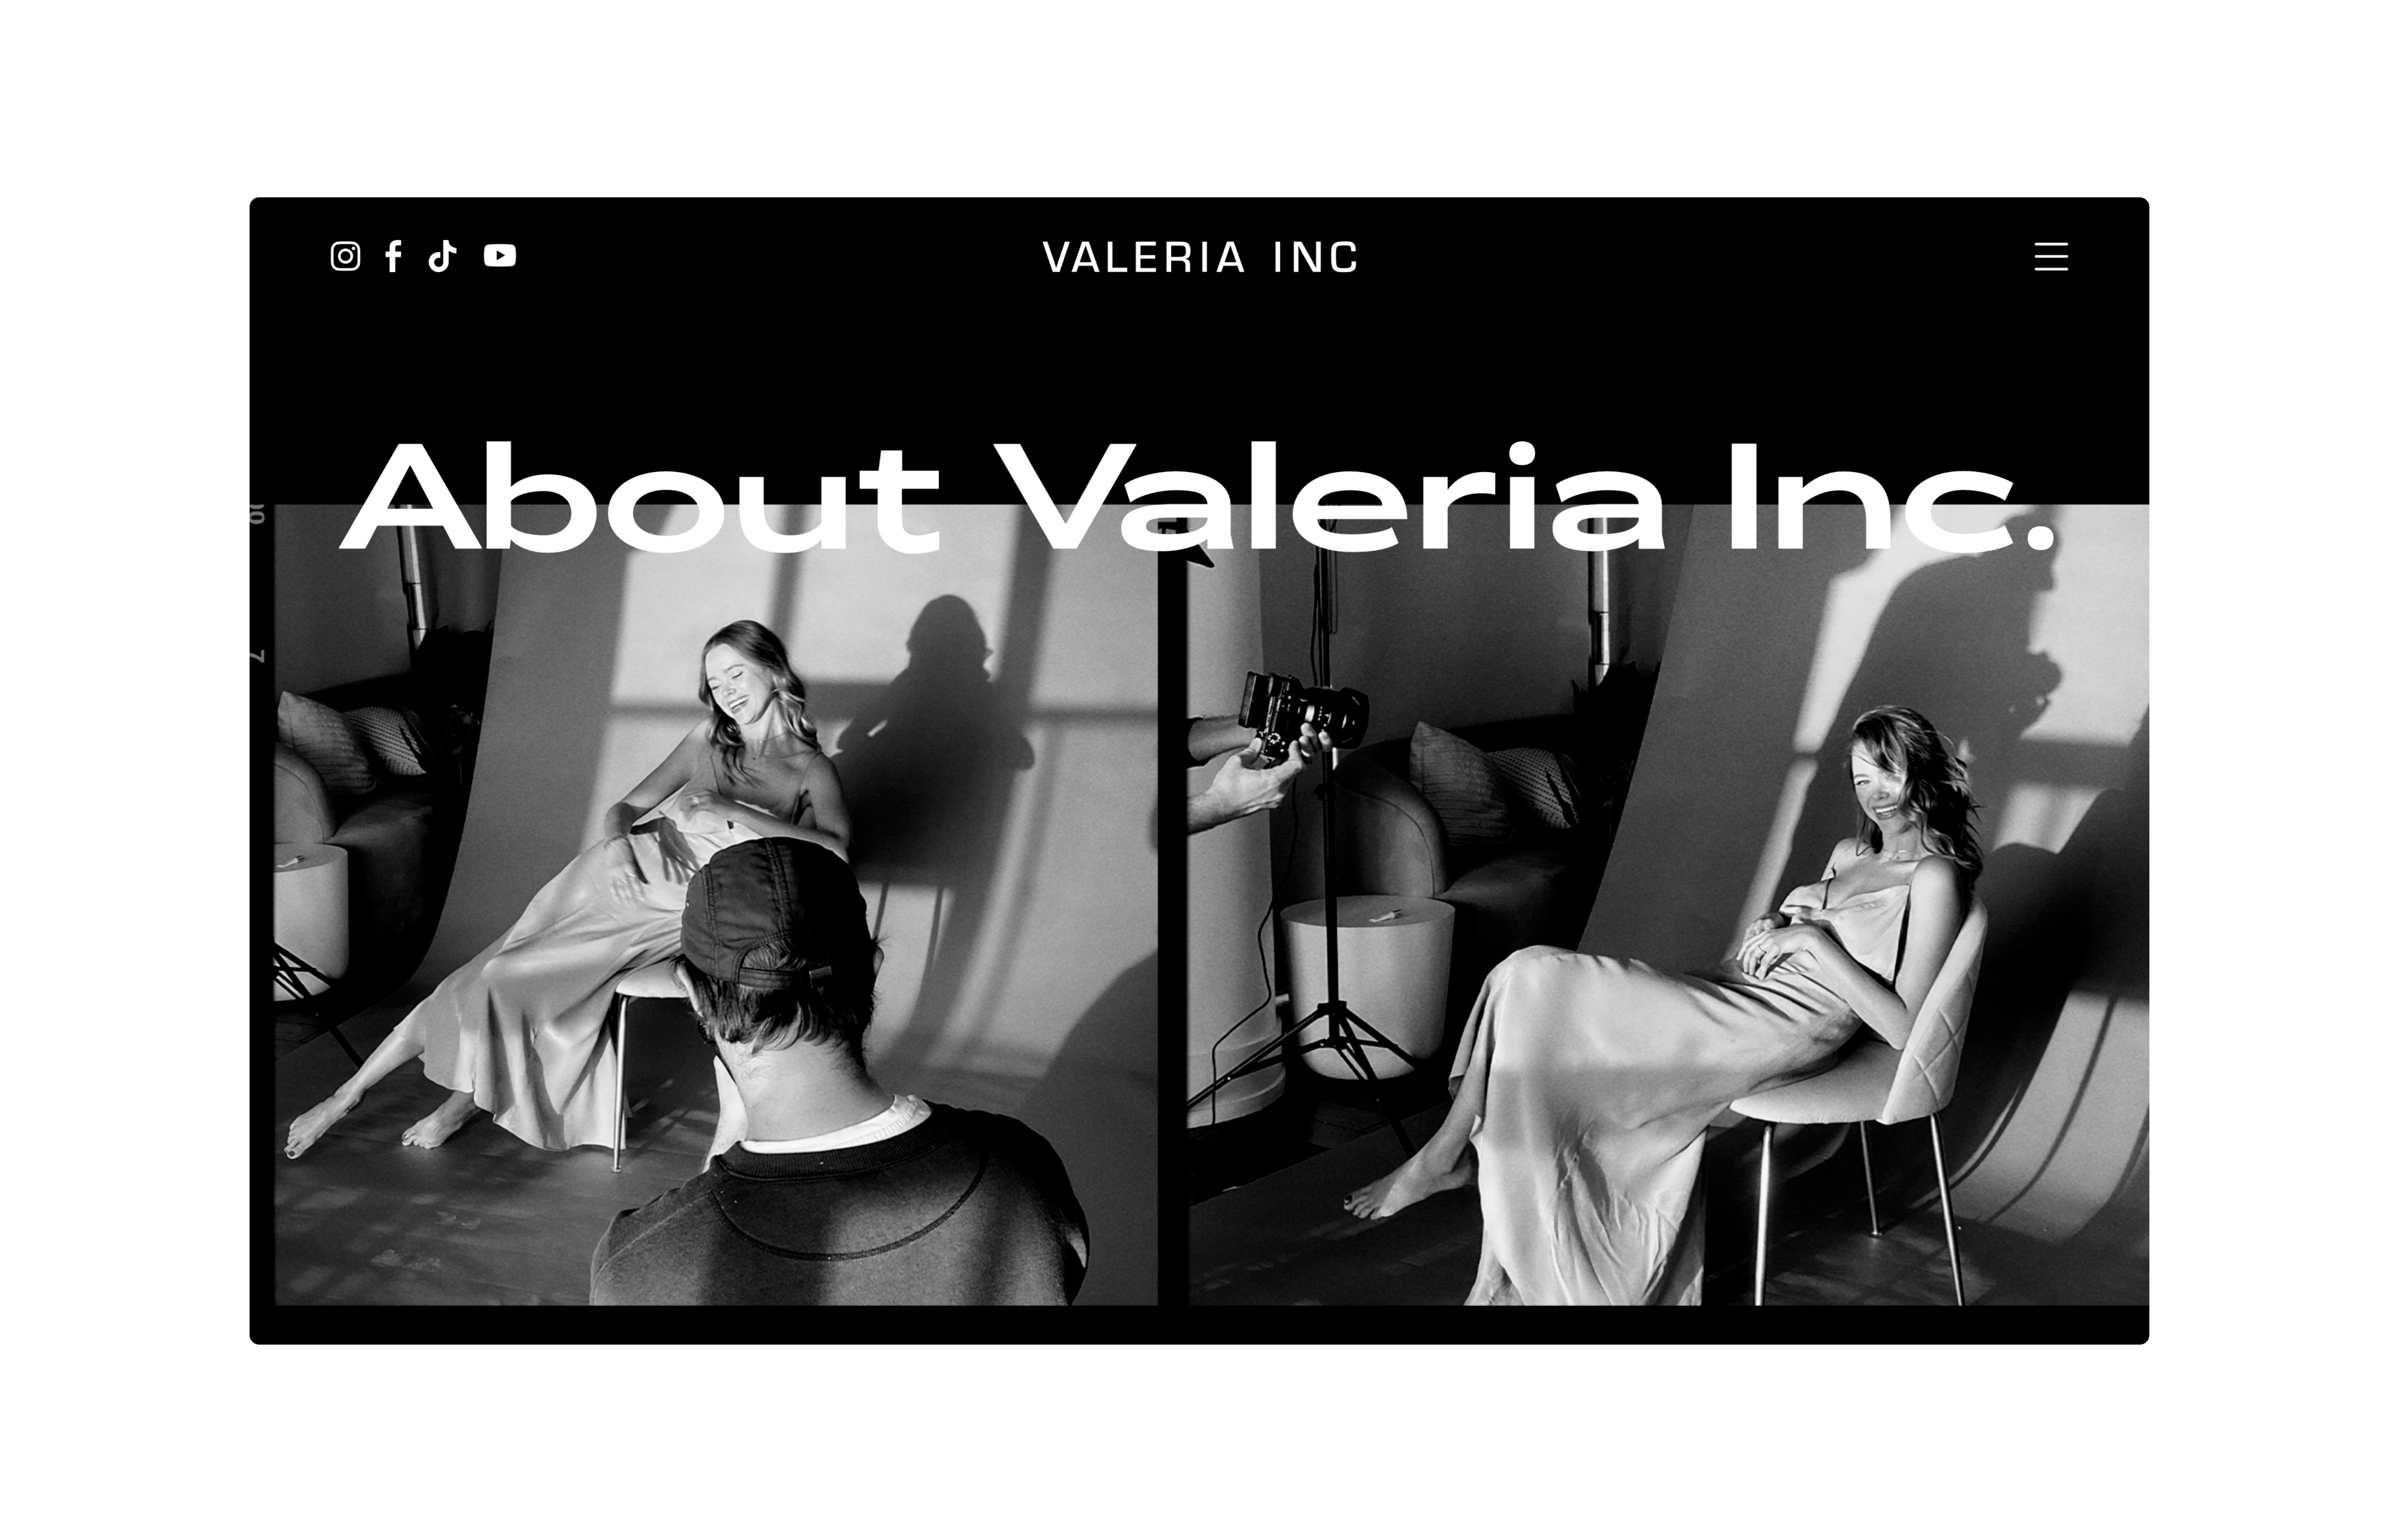 About Valeria Inc